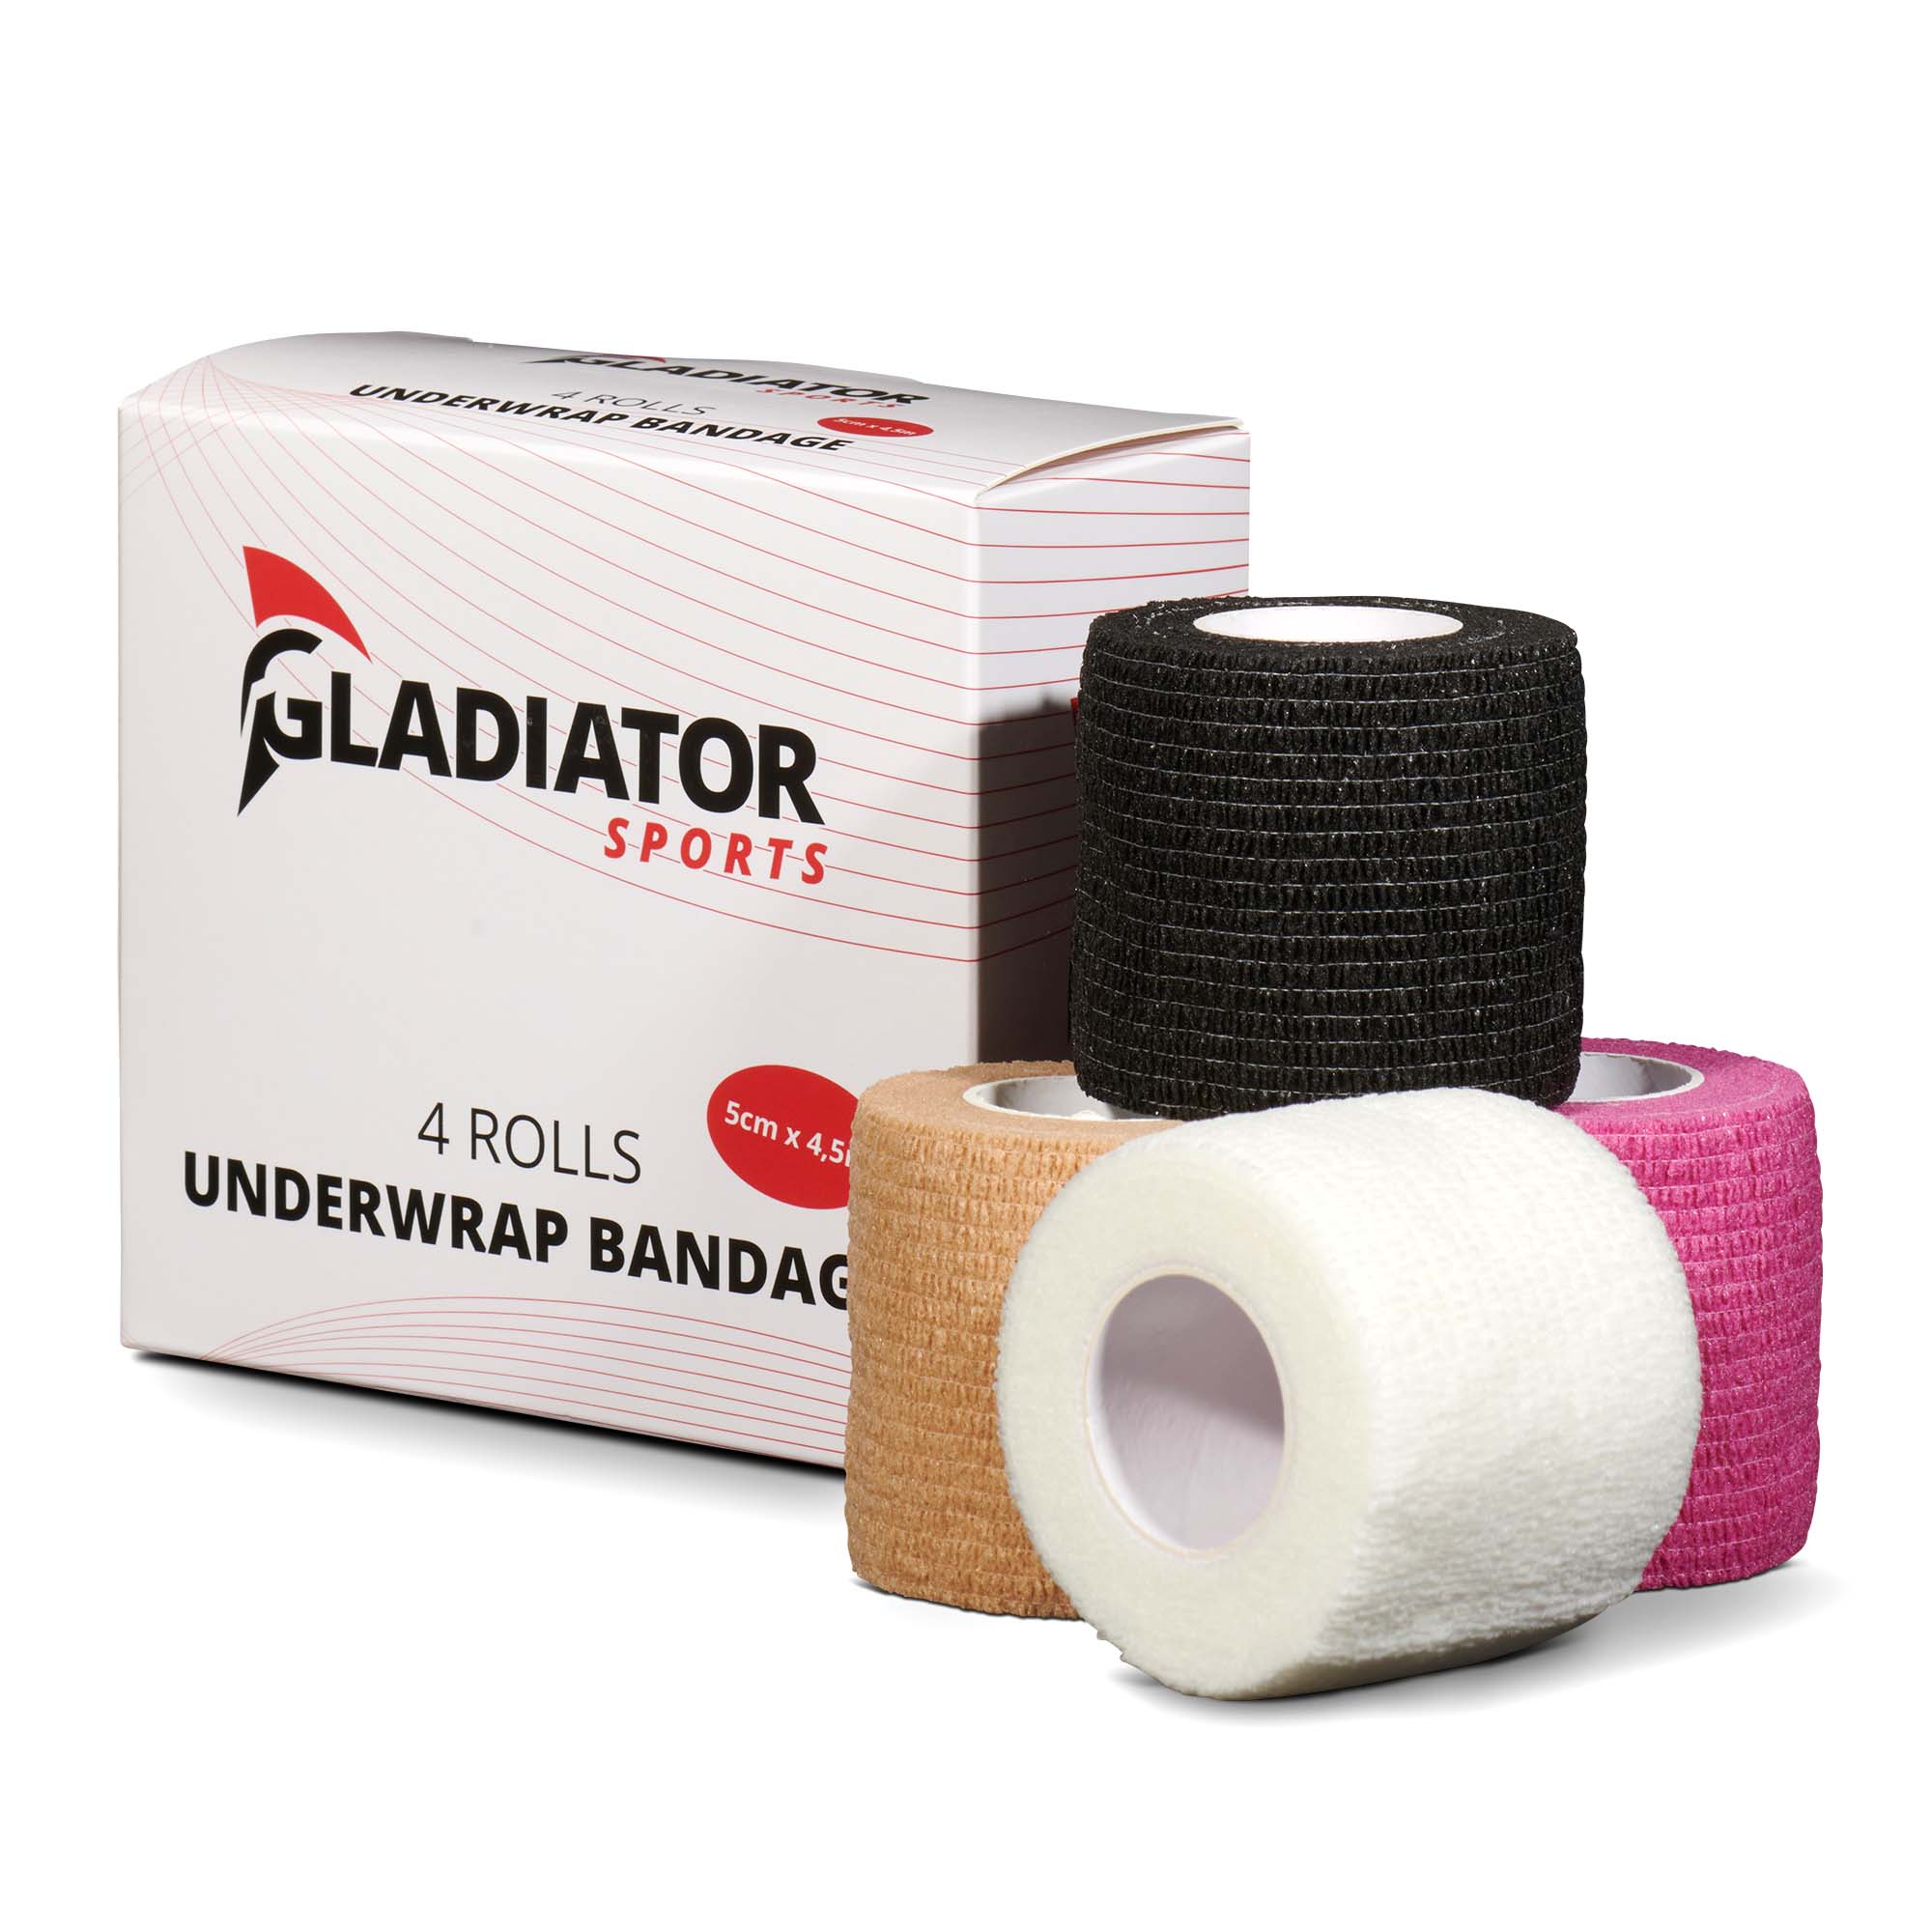 gladiator sports untertape bandage 4 rollen kaufen